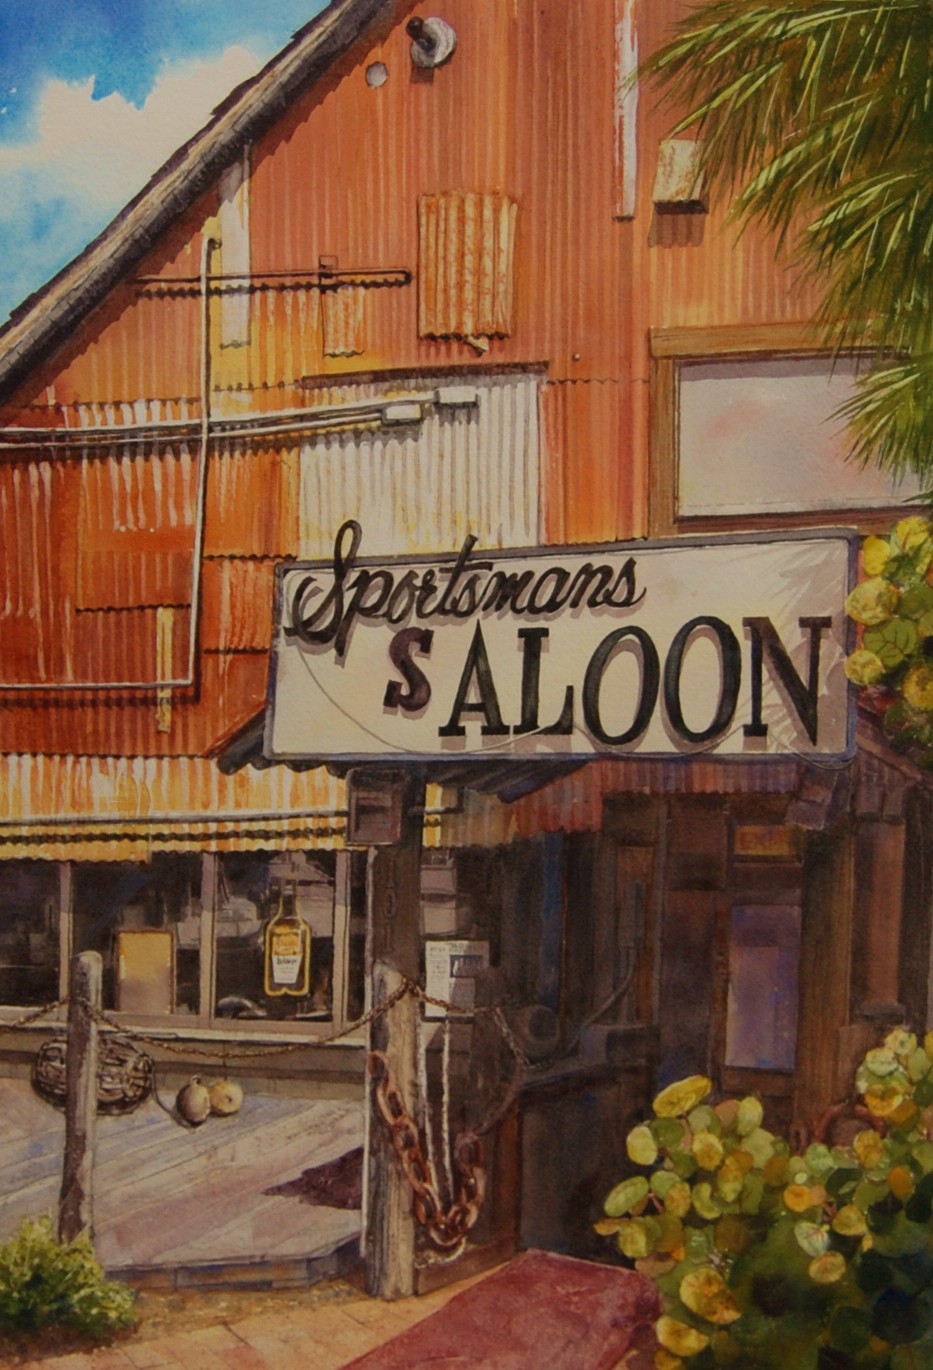 Sportsman's Saloon